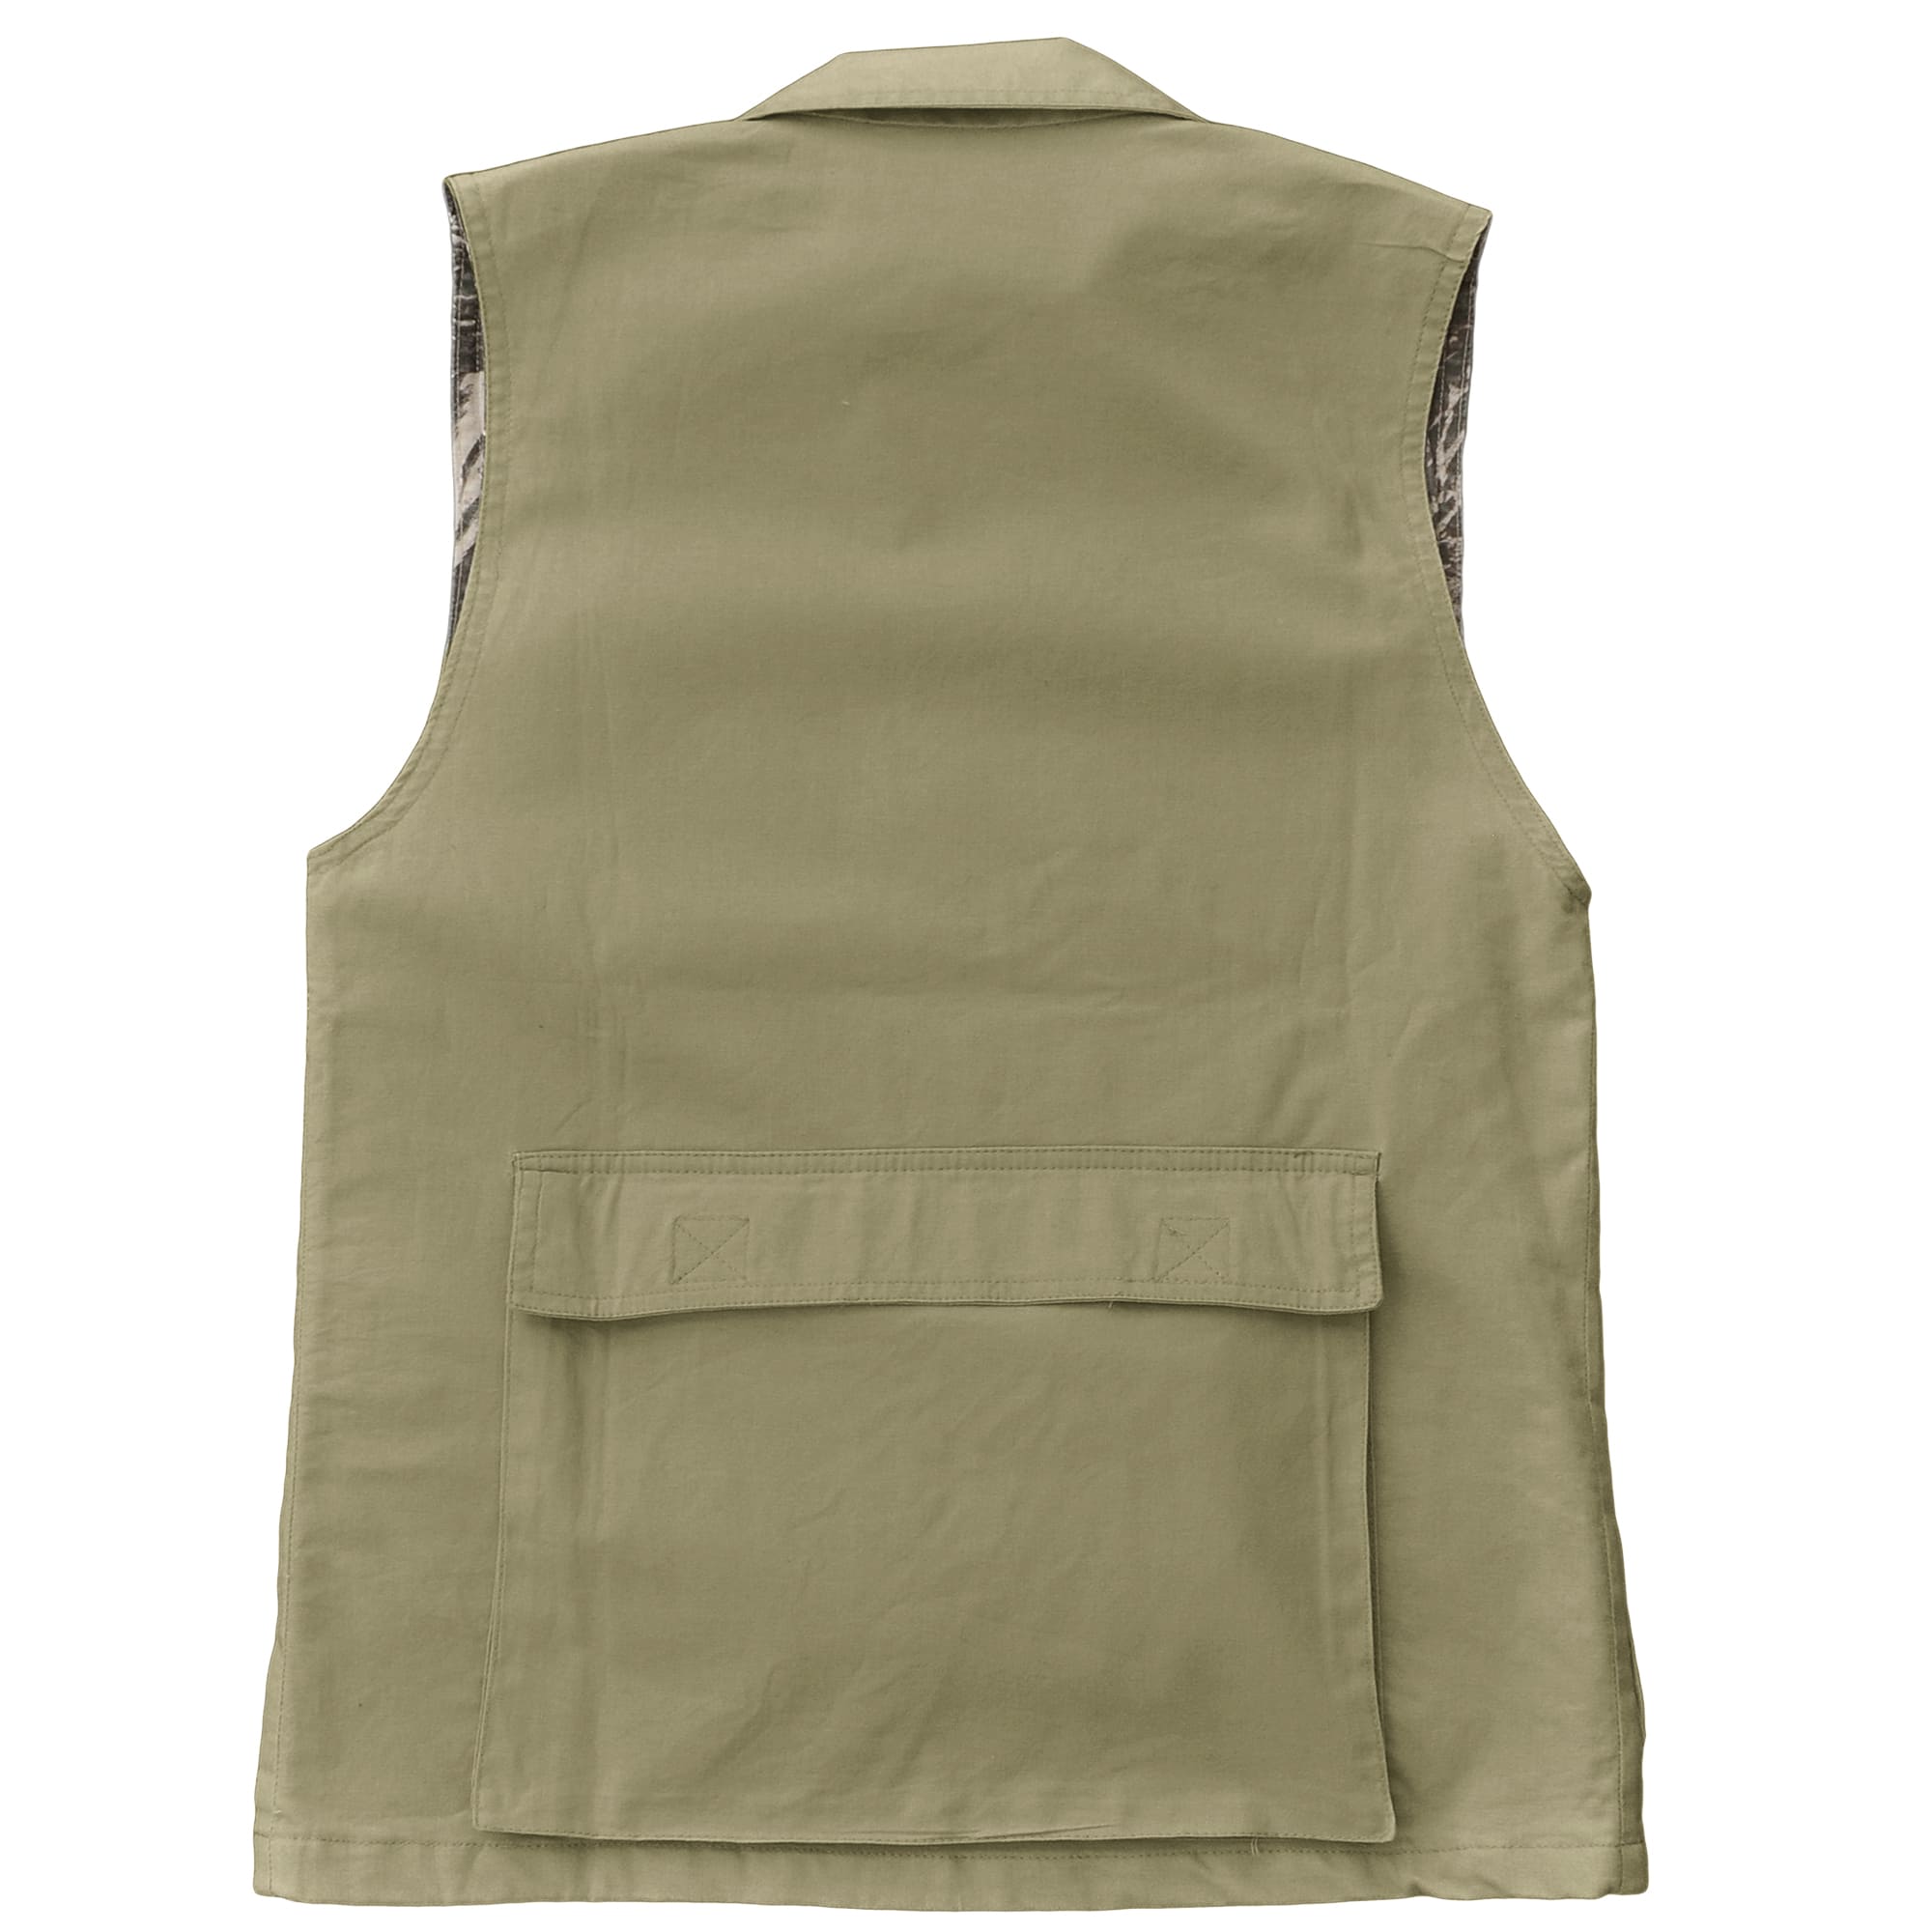 Tag Safari Women's Safari Vest with Covered Oversized Pockets (Khaki, Large)